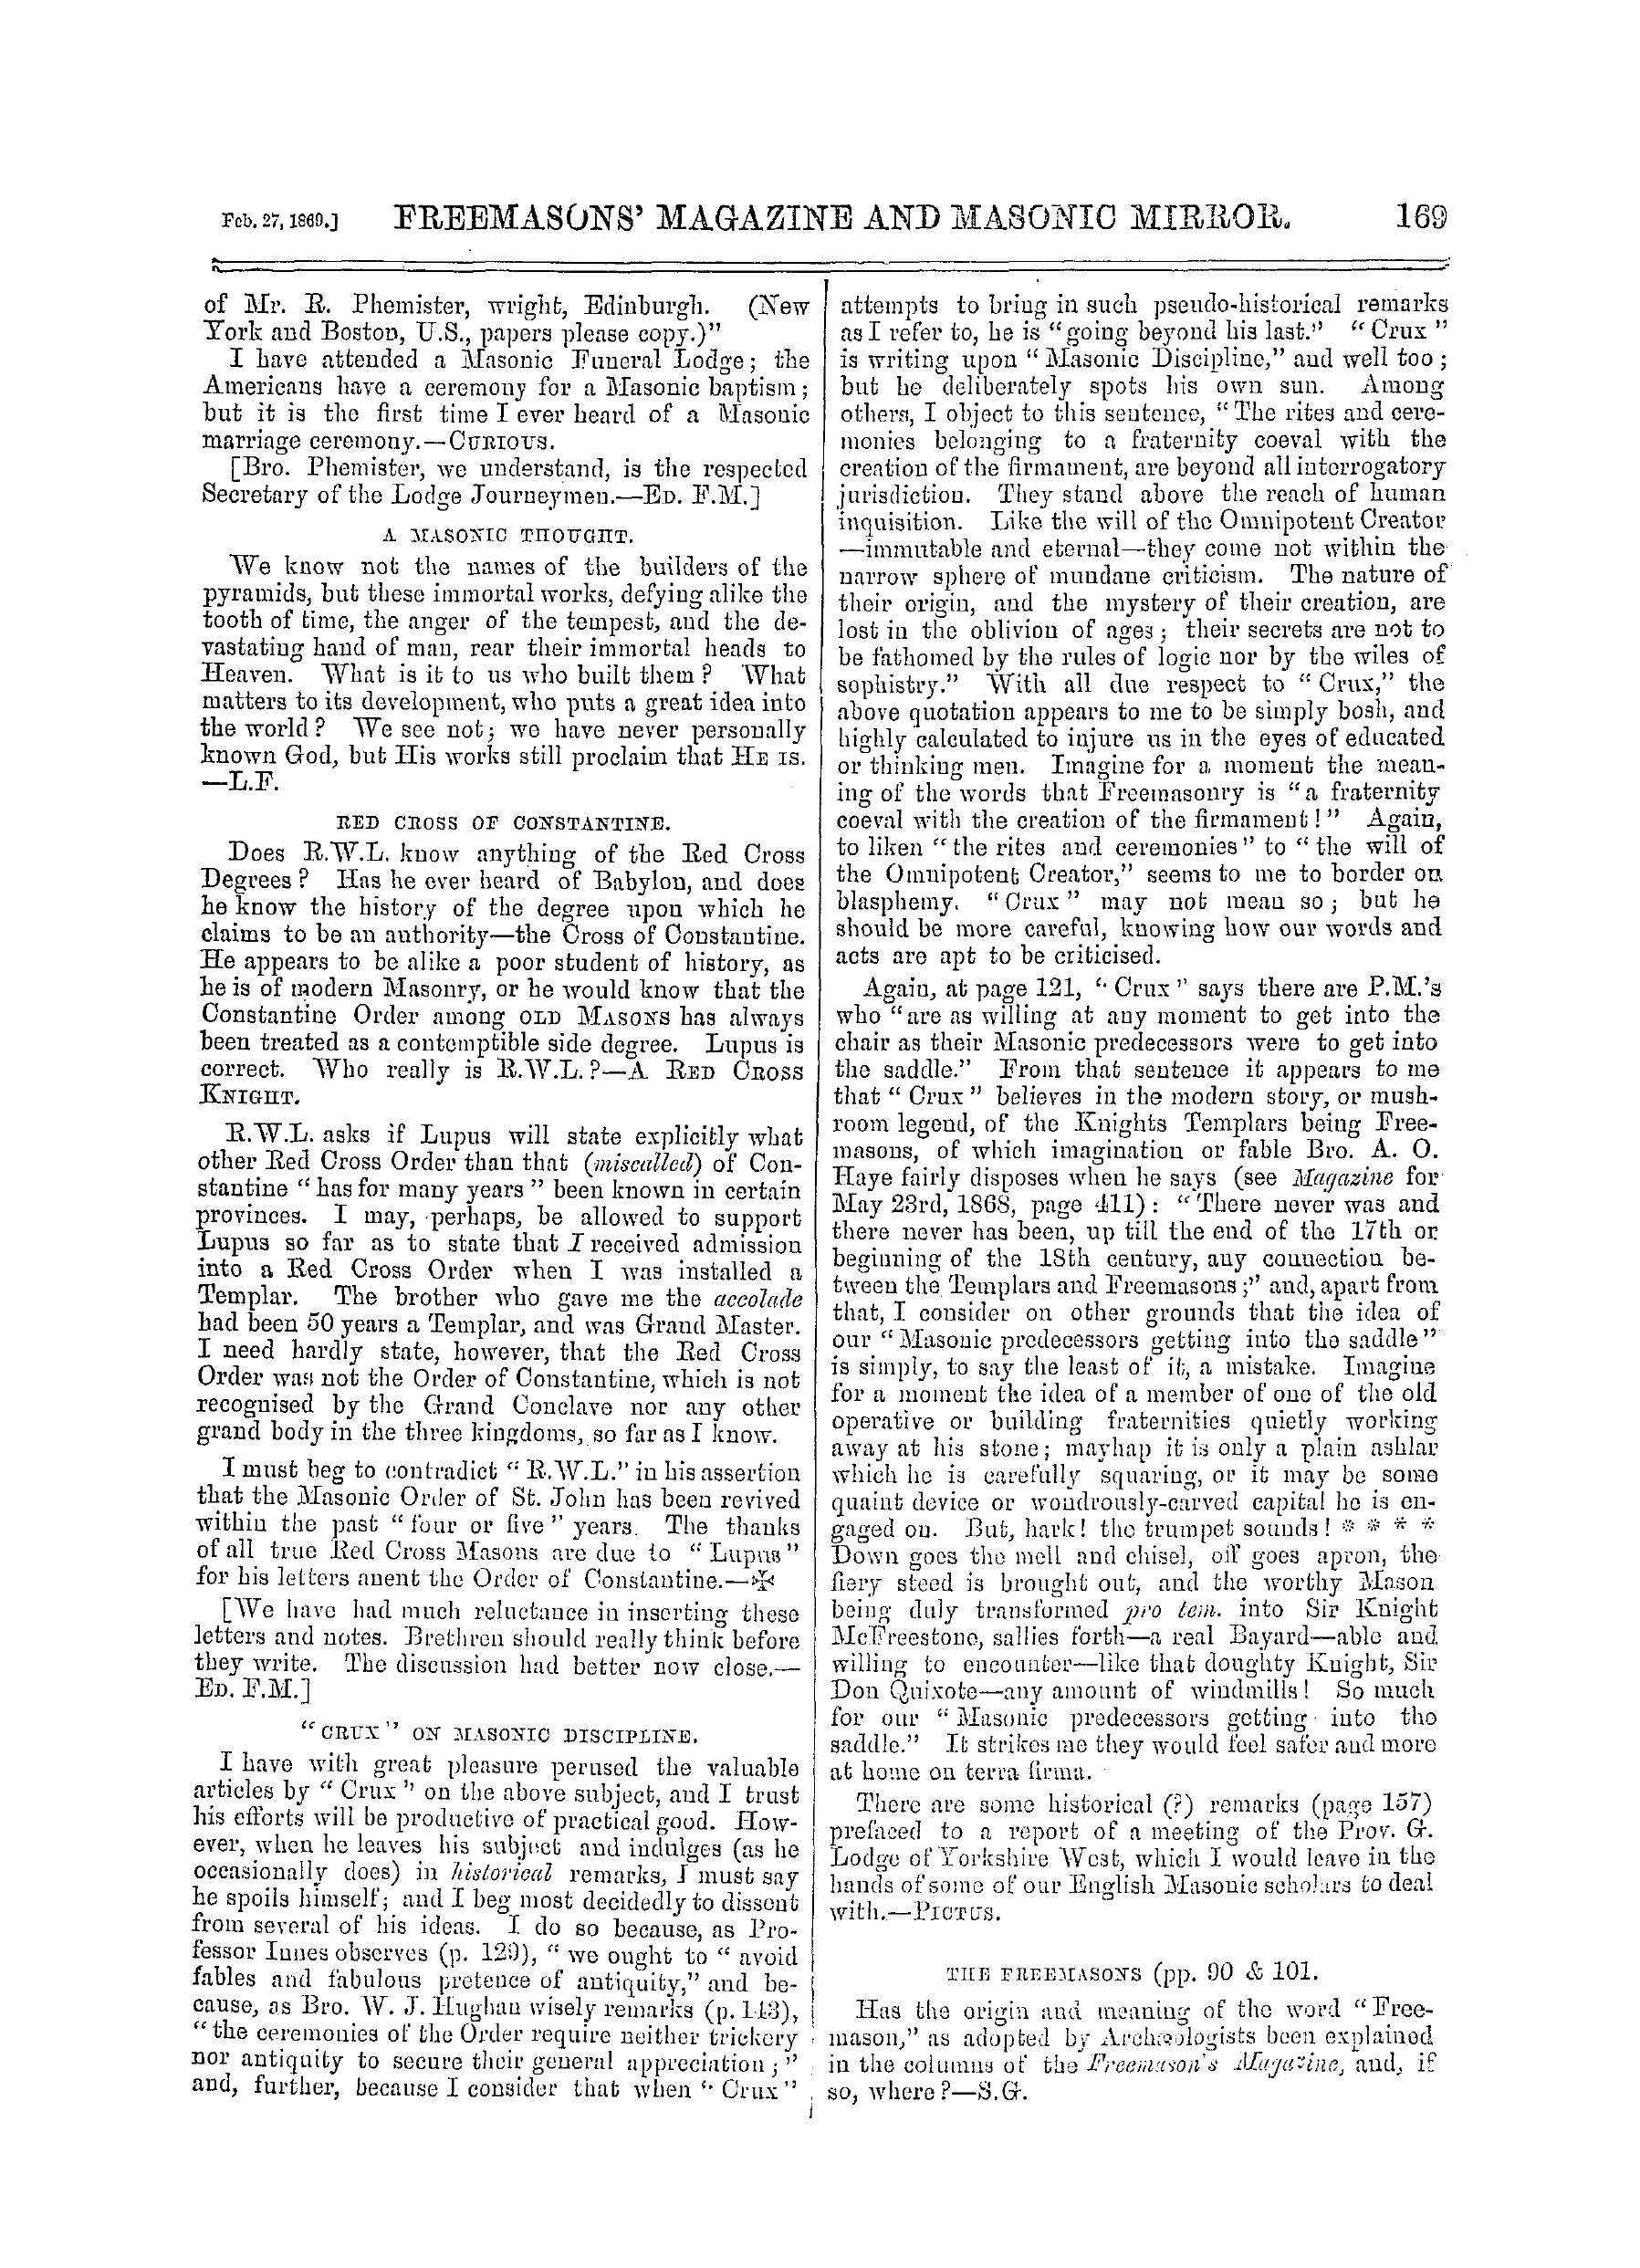 The Freemasons' Monthly Magazine: 1869-02-27: 9